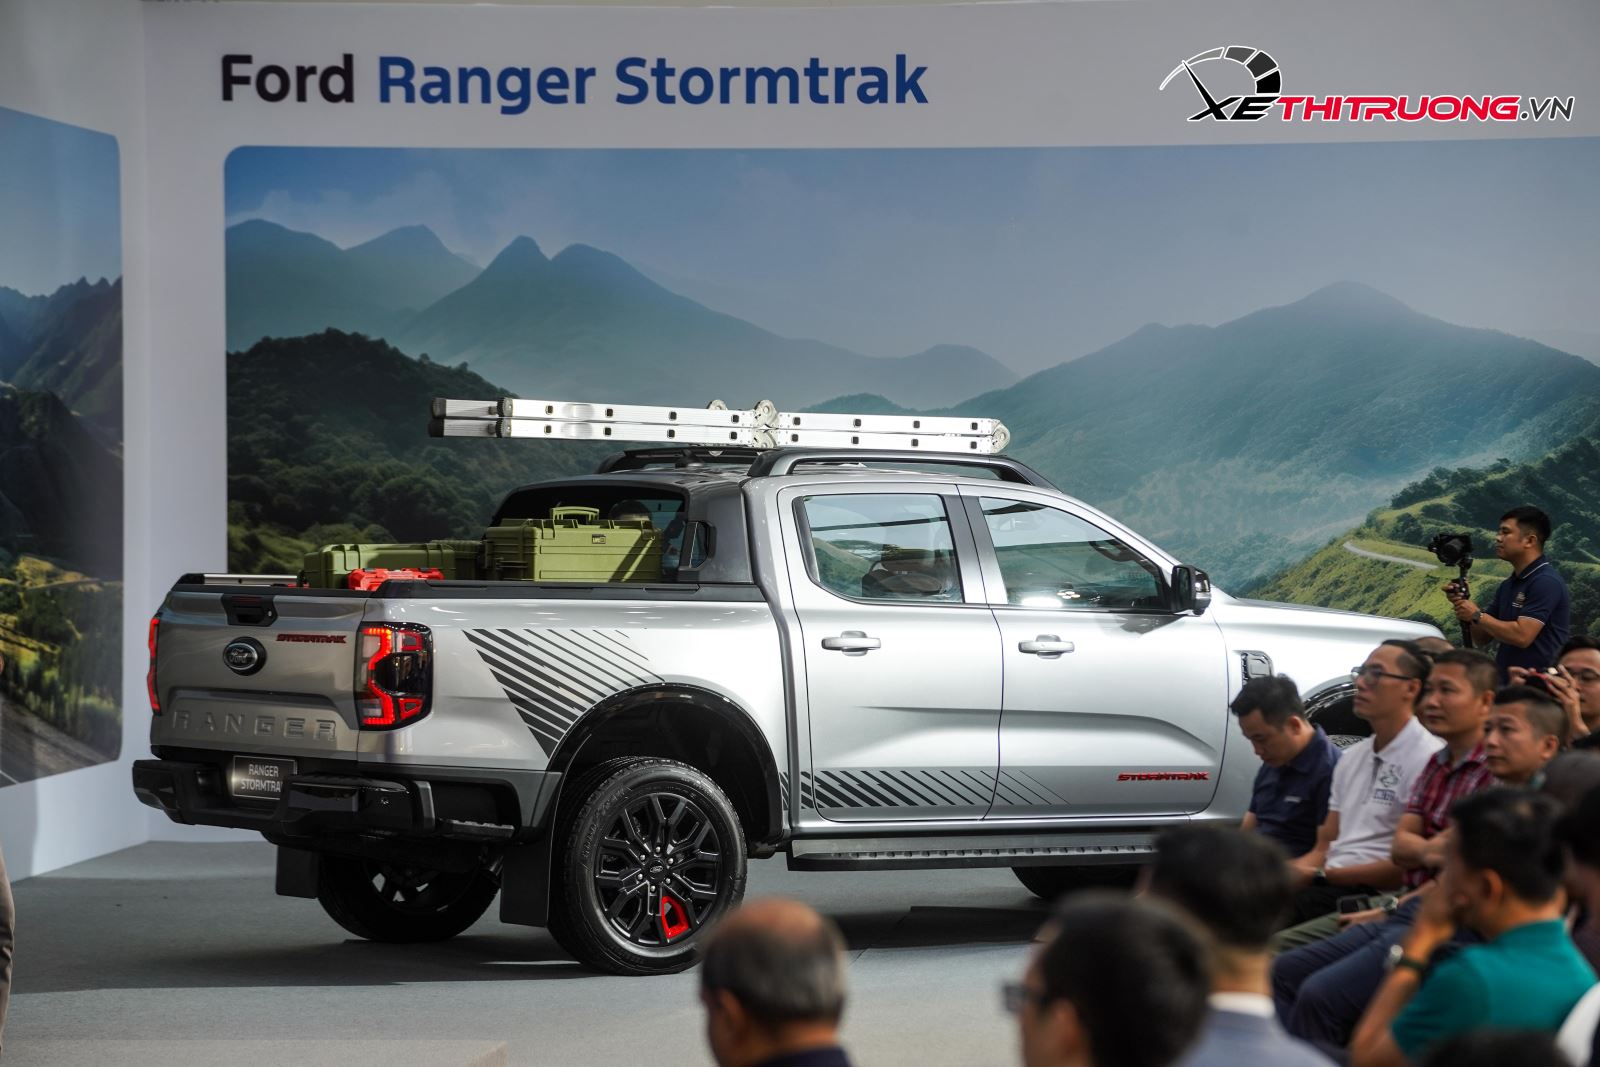 Ford Ranger Stormtrak